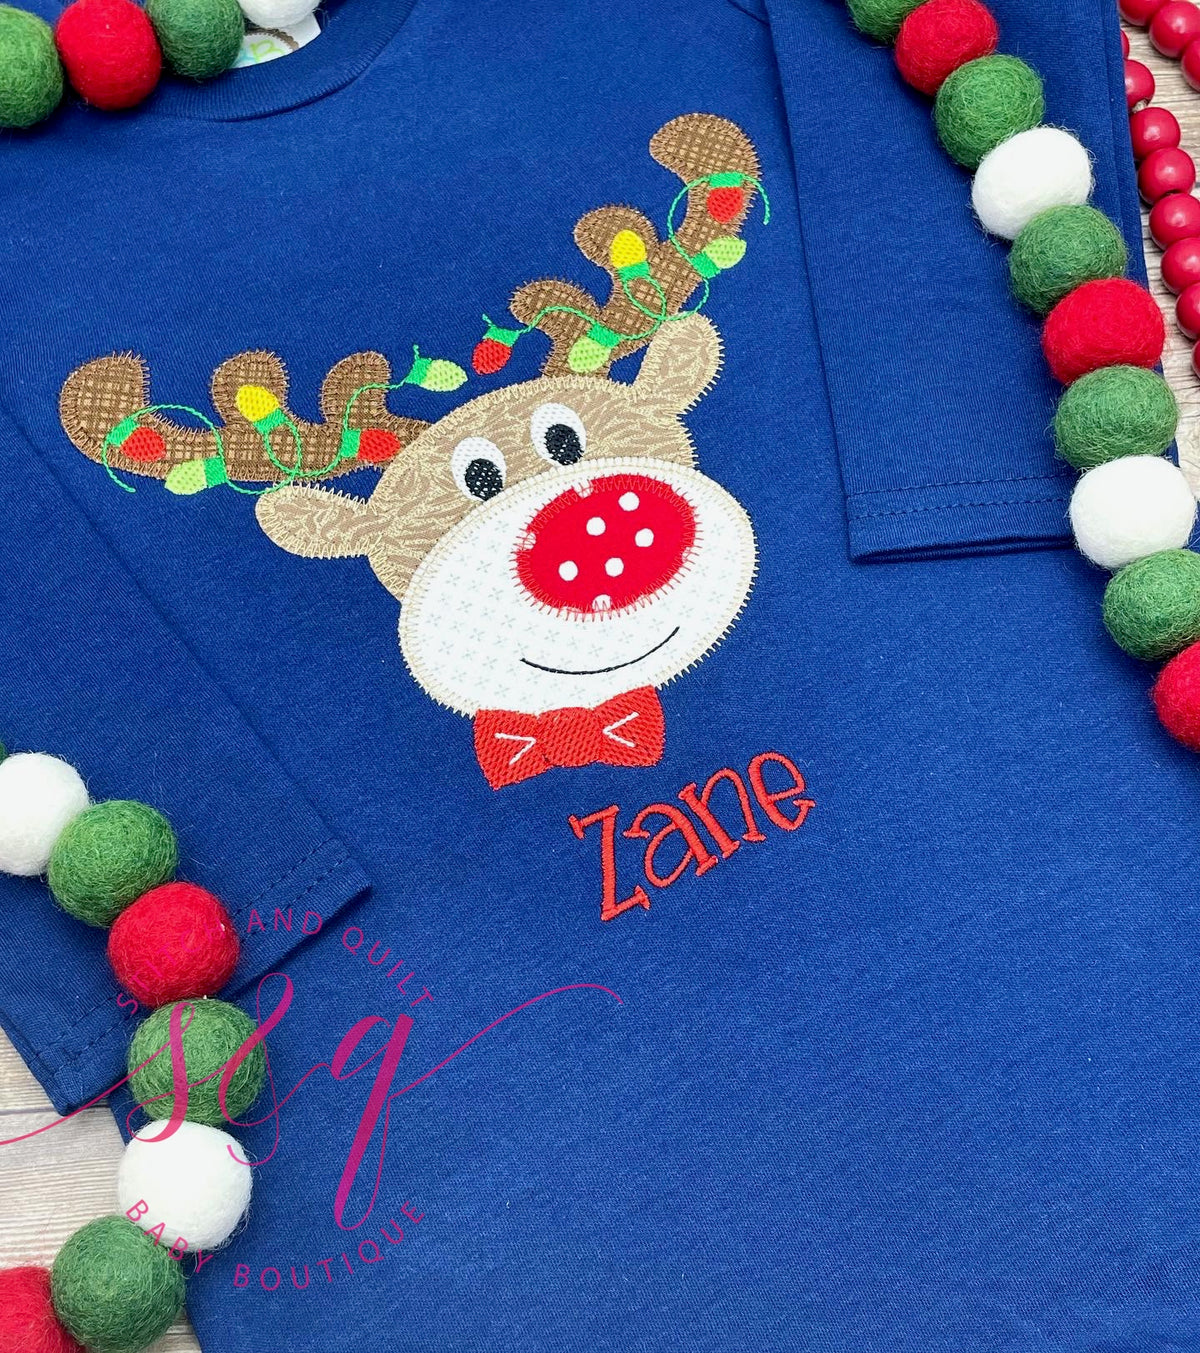 Boys Toddler and Infant Christmas Blue Shirt Reindeer Lights, Holiday shirt for boys, Christmas shirt for boys